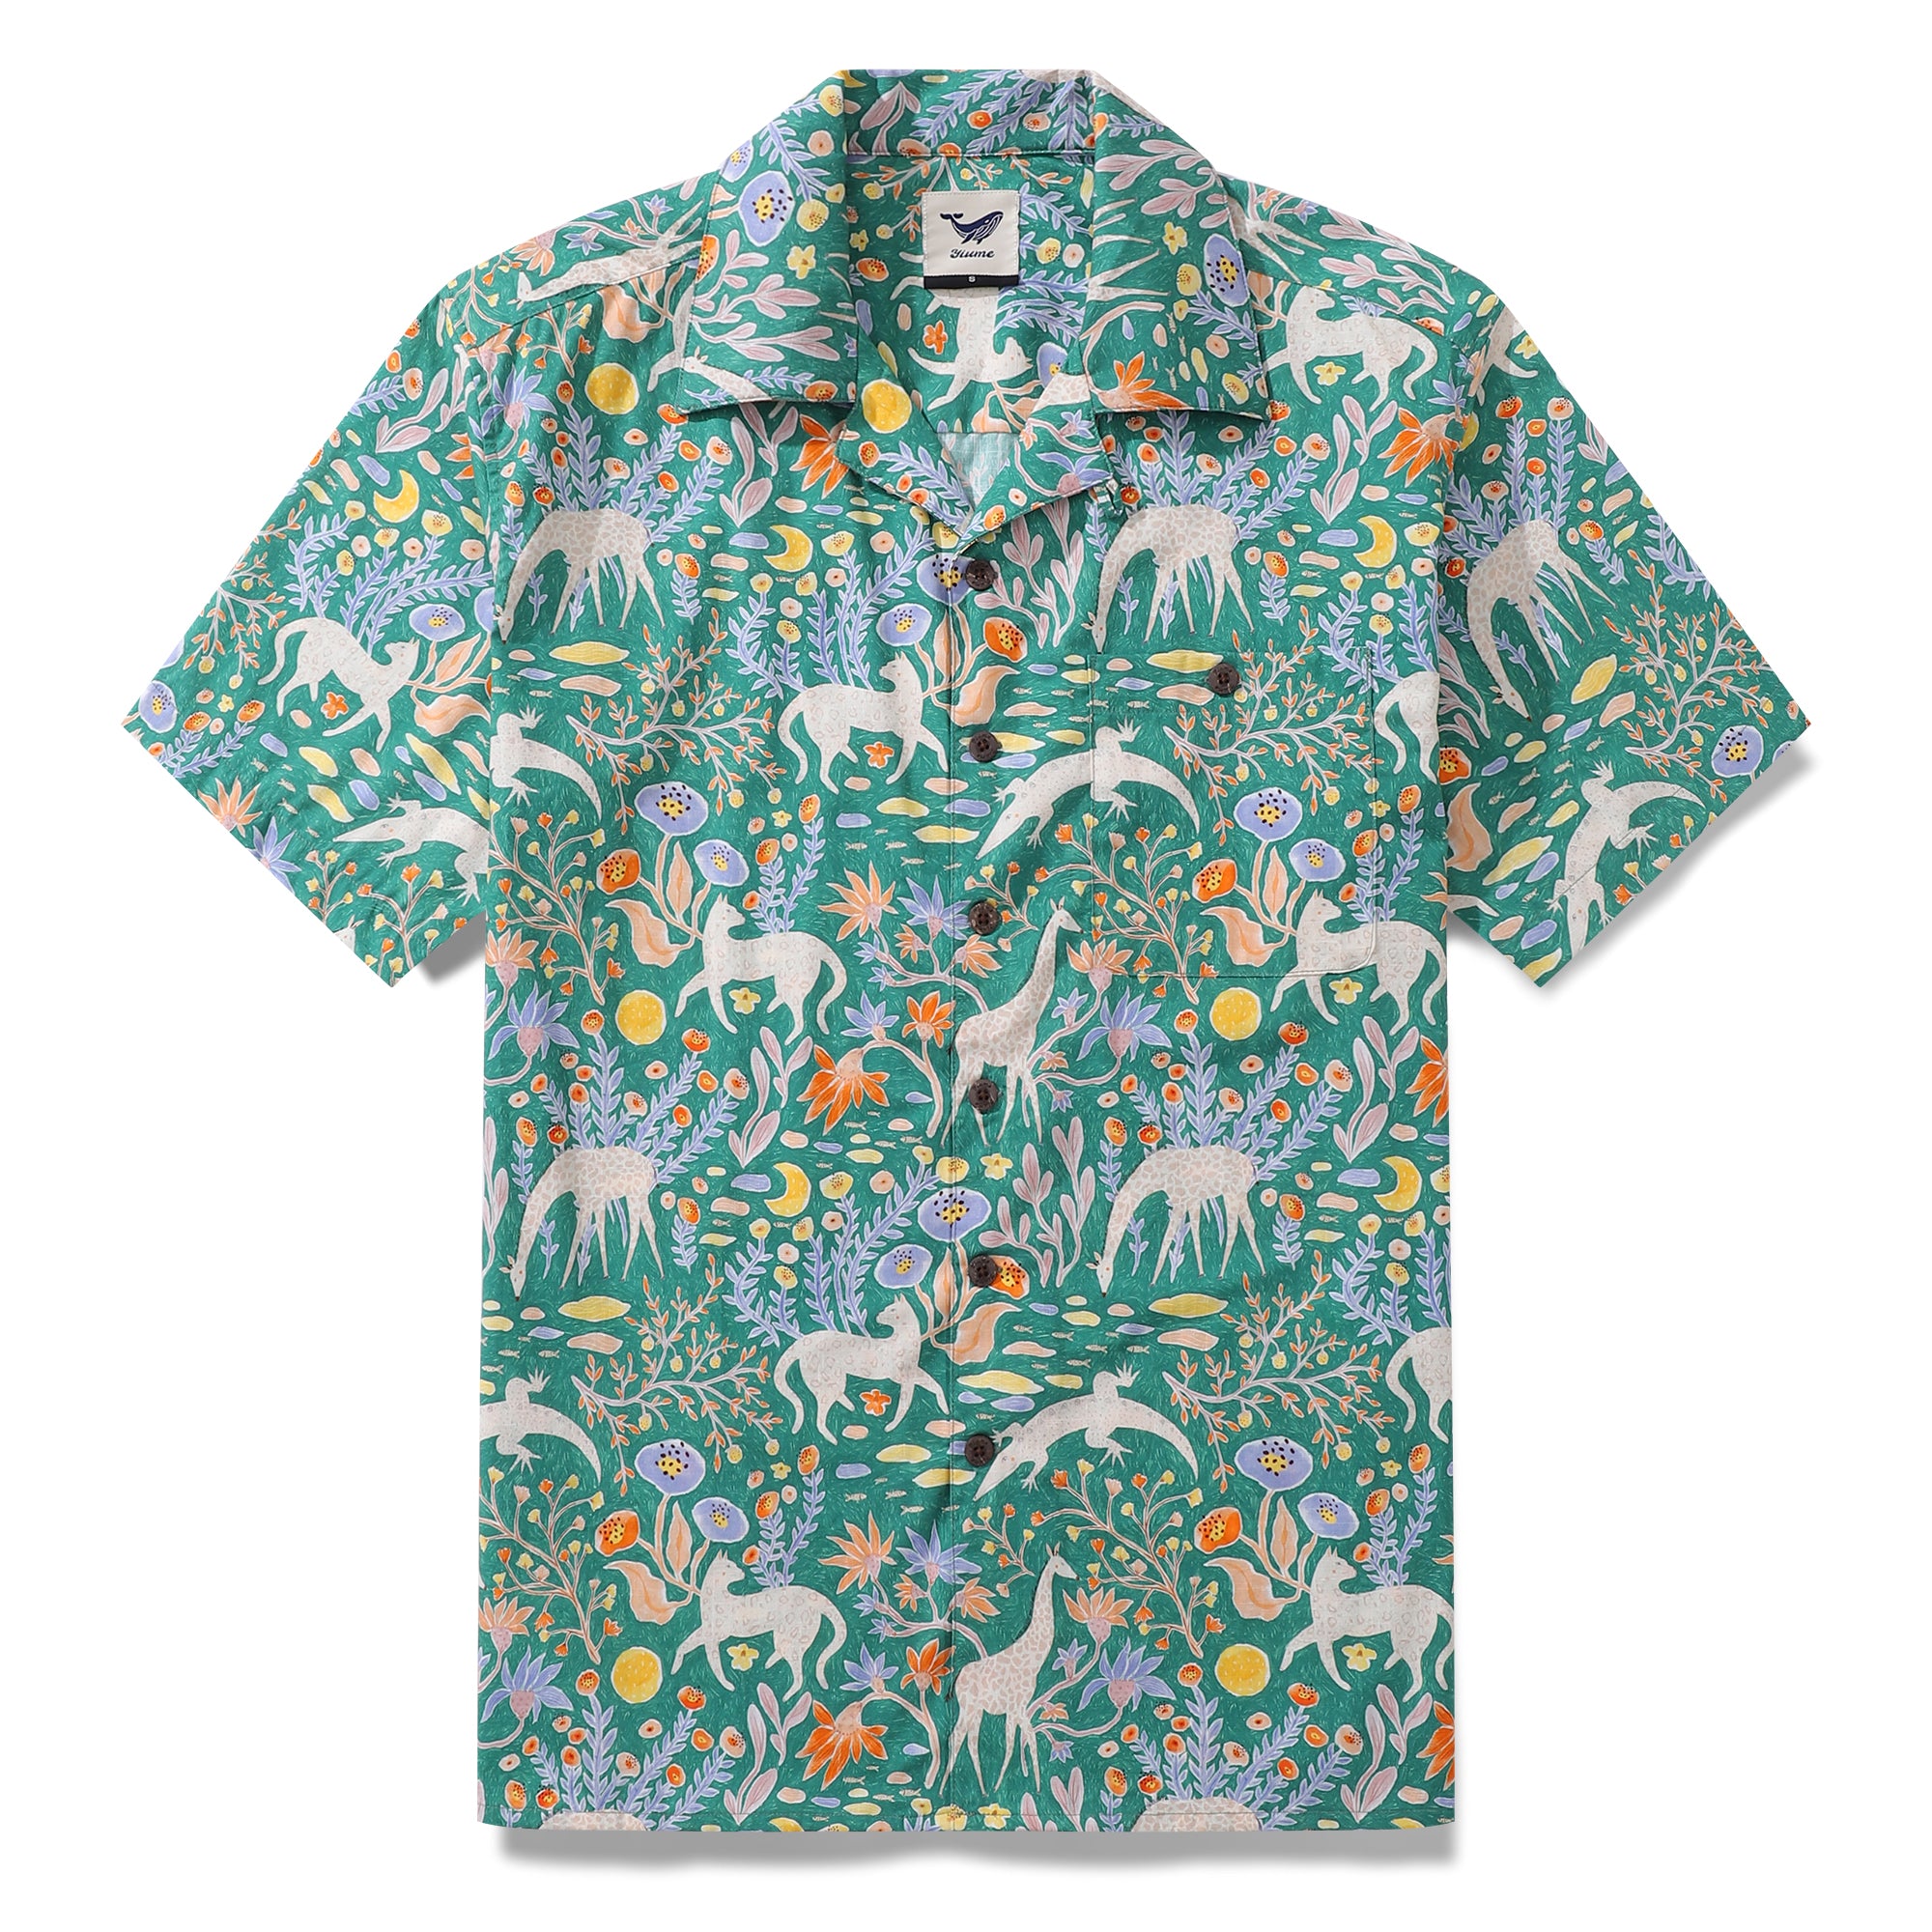 Hawaiian Shirt For Men Menagerie By Jill Labieniec Print Shirt Camp Collar 100% Cotton